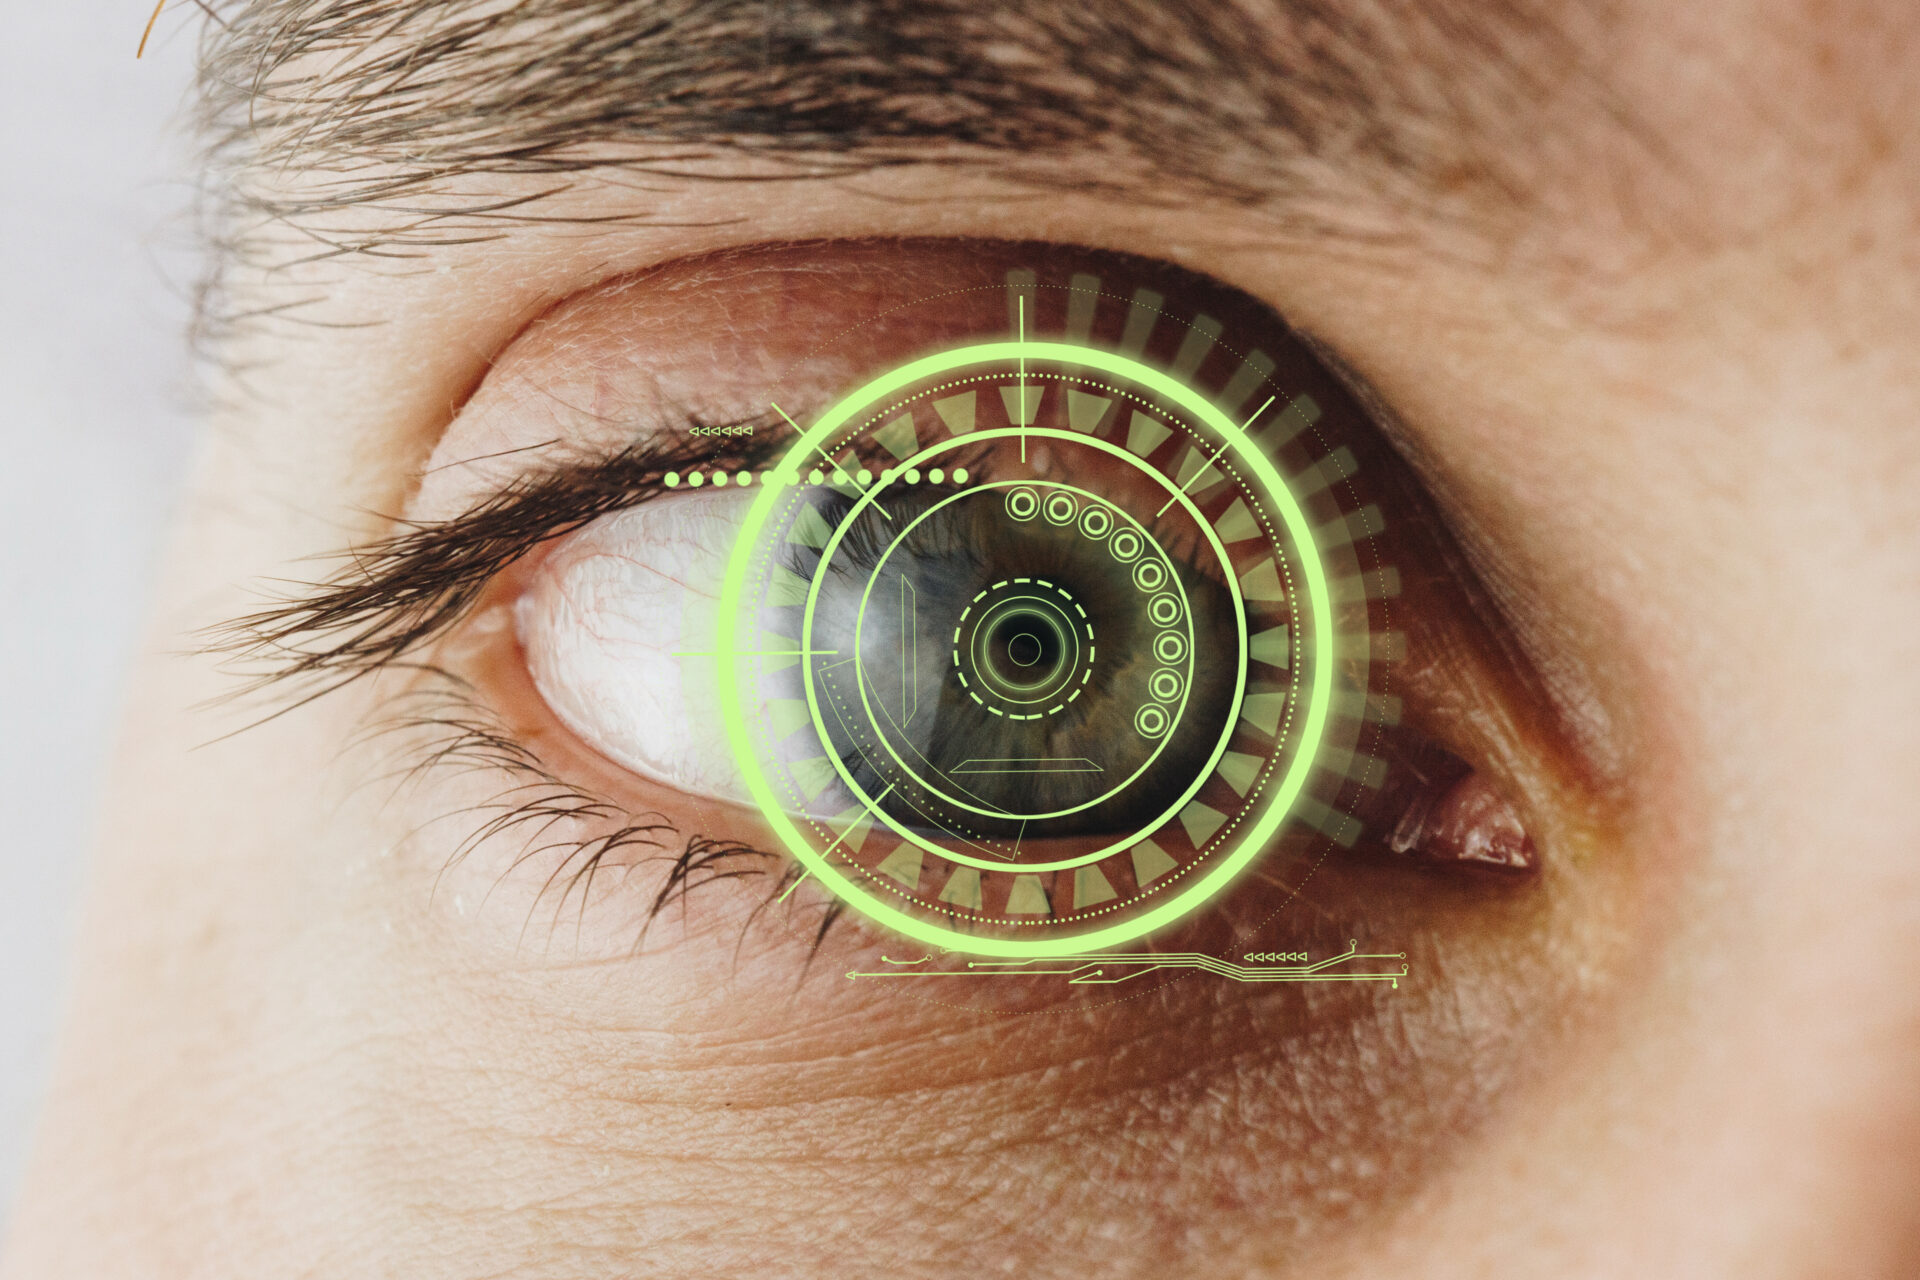 biometric research and behavioral biometrics